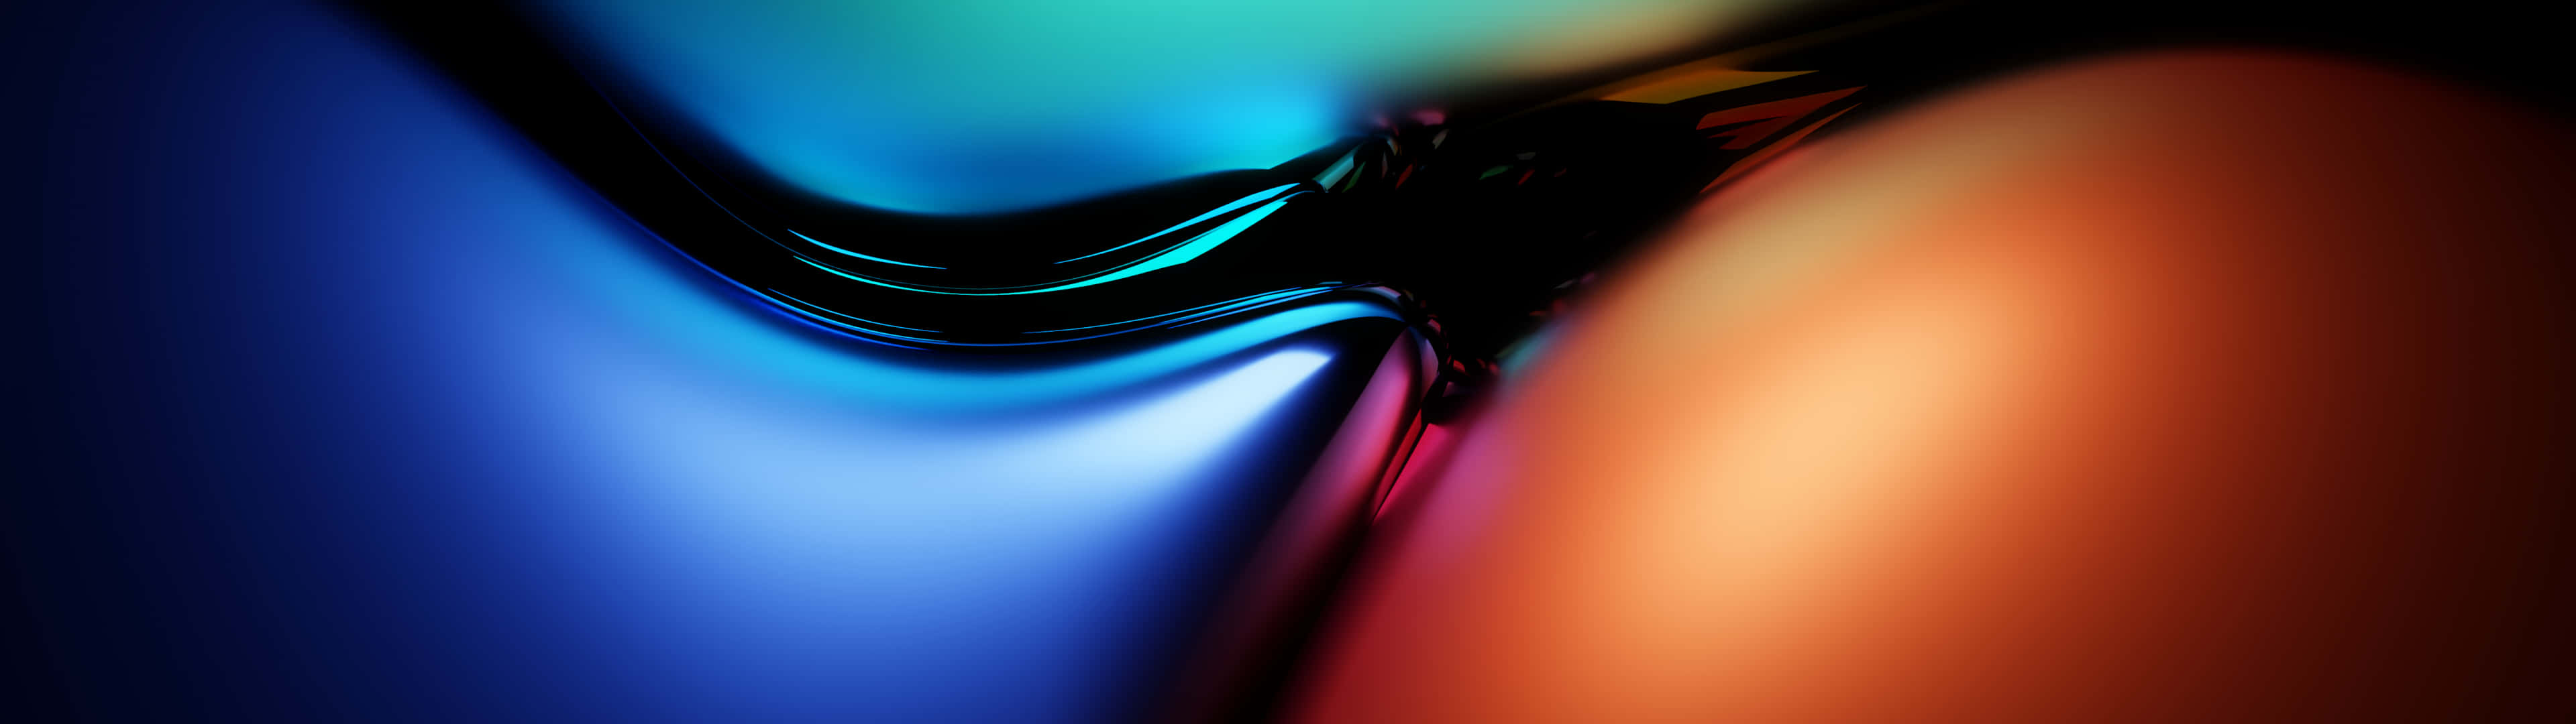 Färgstarktabstrakt Ultra Hd Dubbelmonitor - Bakgrundsbild Wallpaper